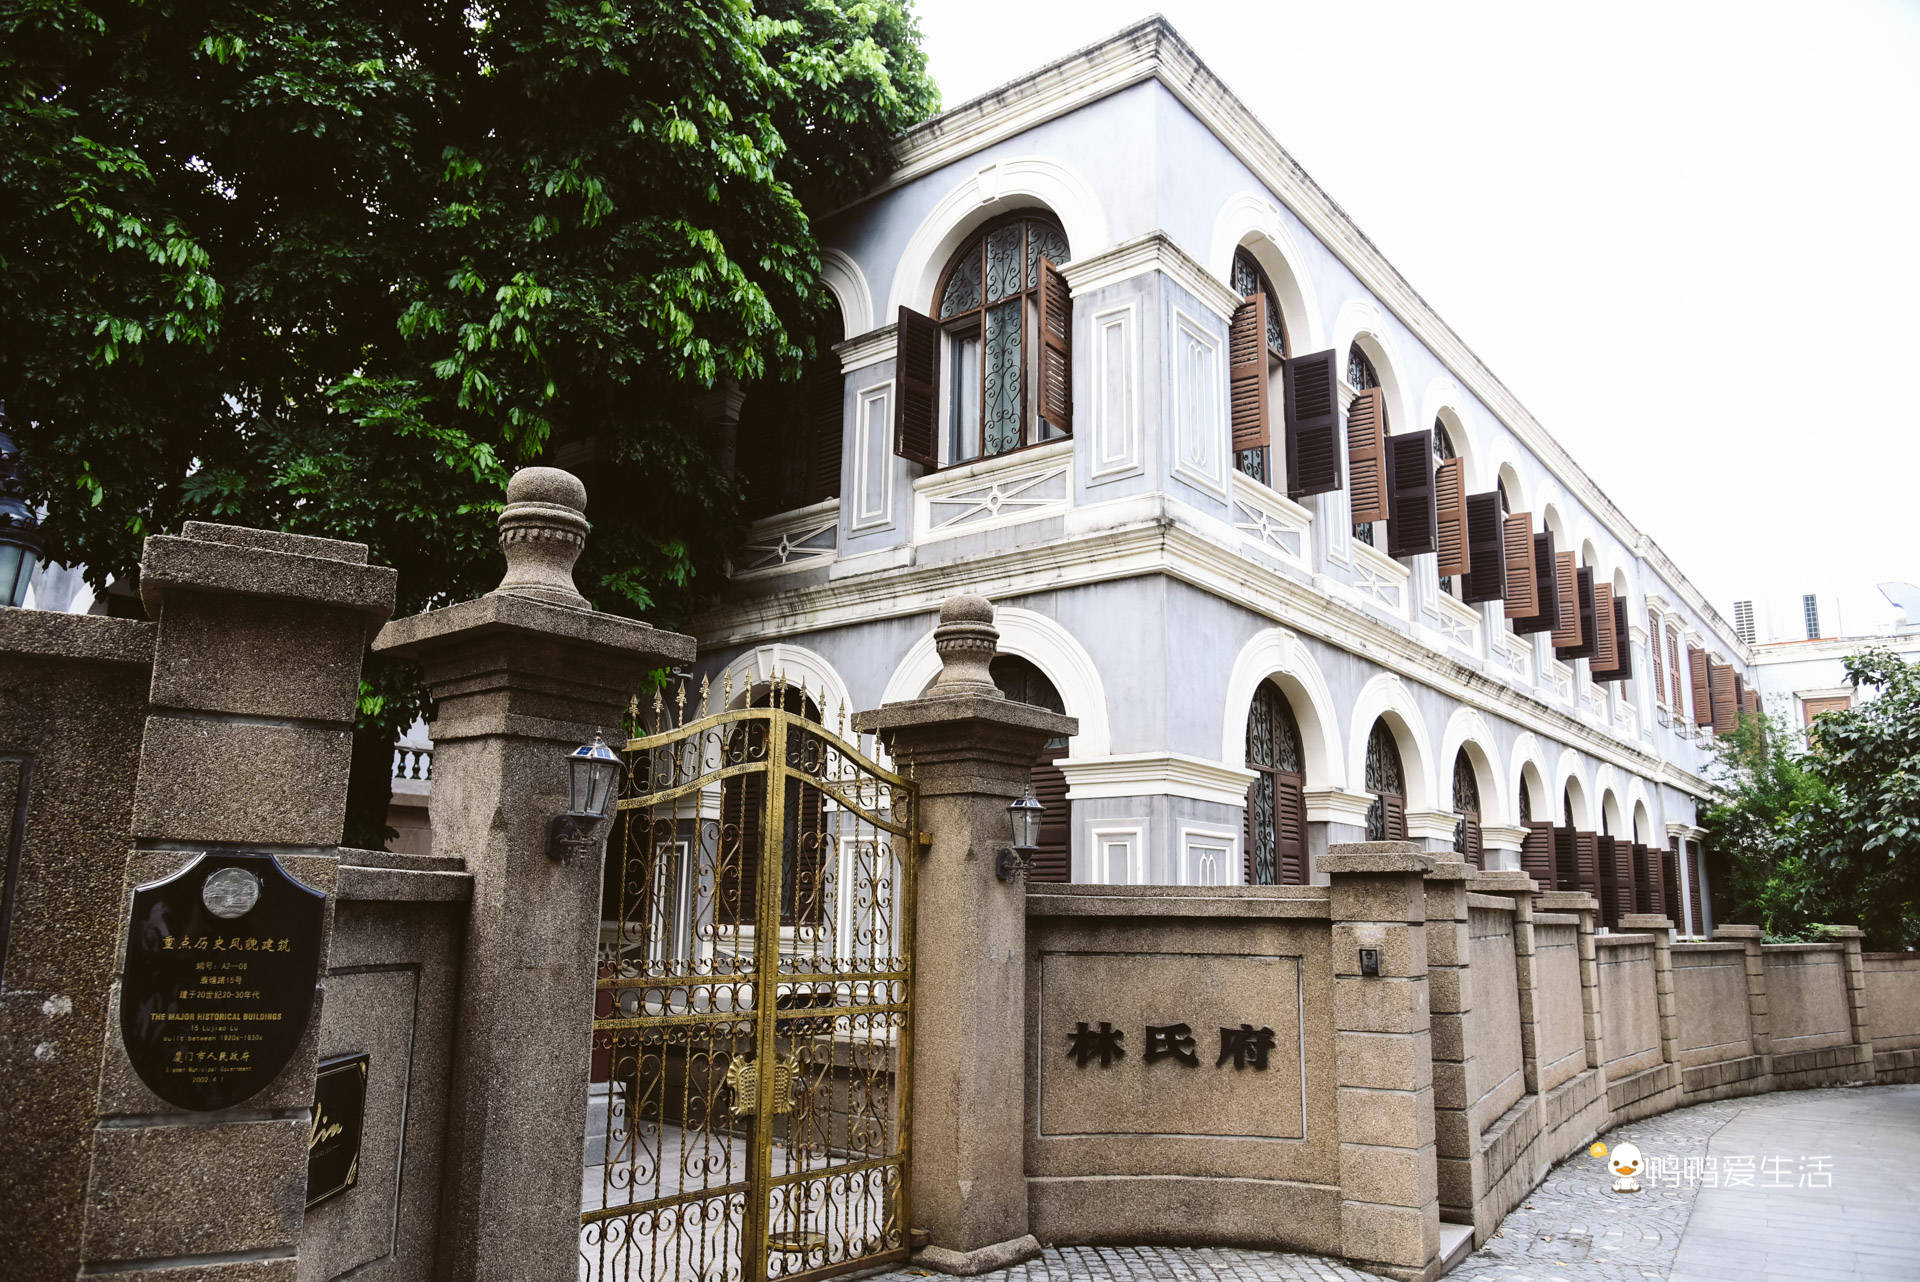 唯一称作府的只有林氏府,它是台湾板桥林氏家族在鼓浪屿的故居,俗称